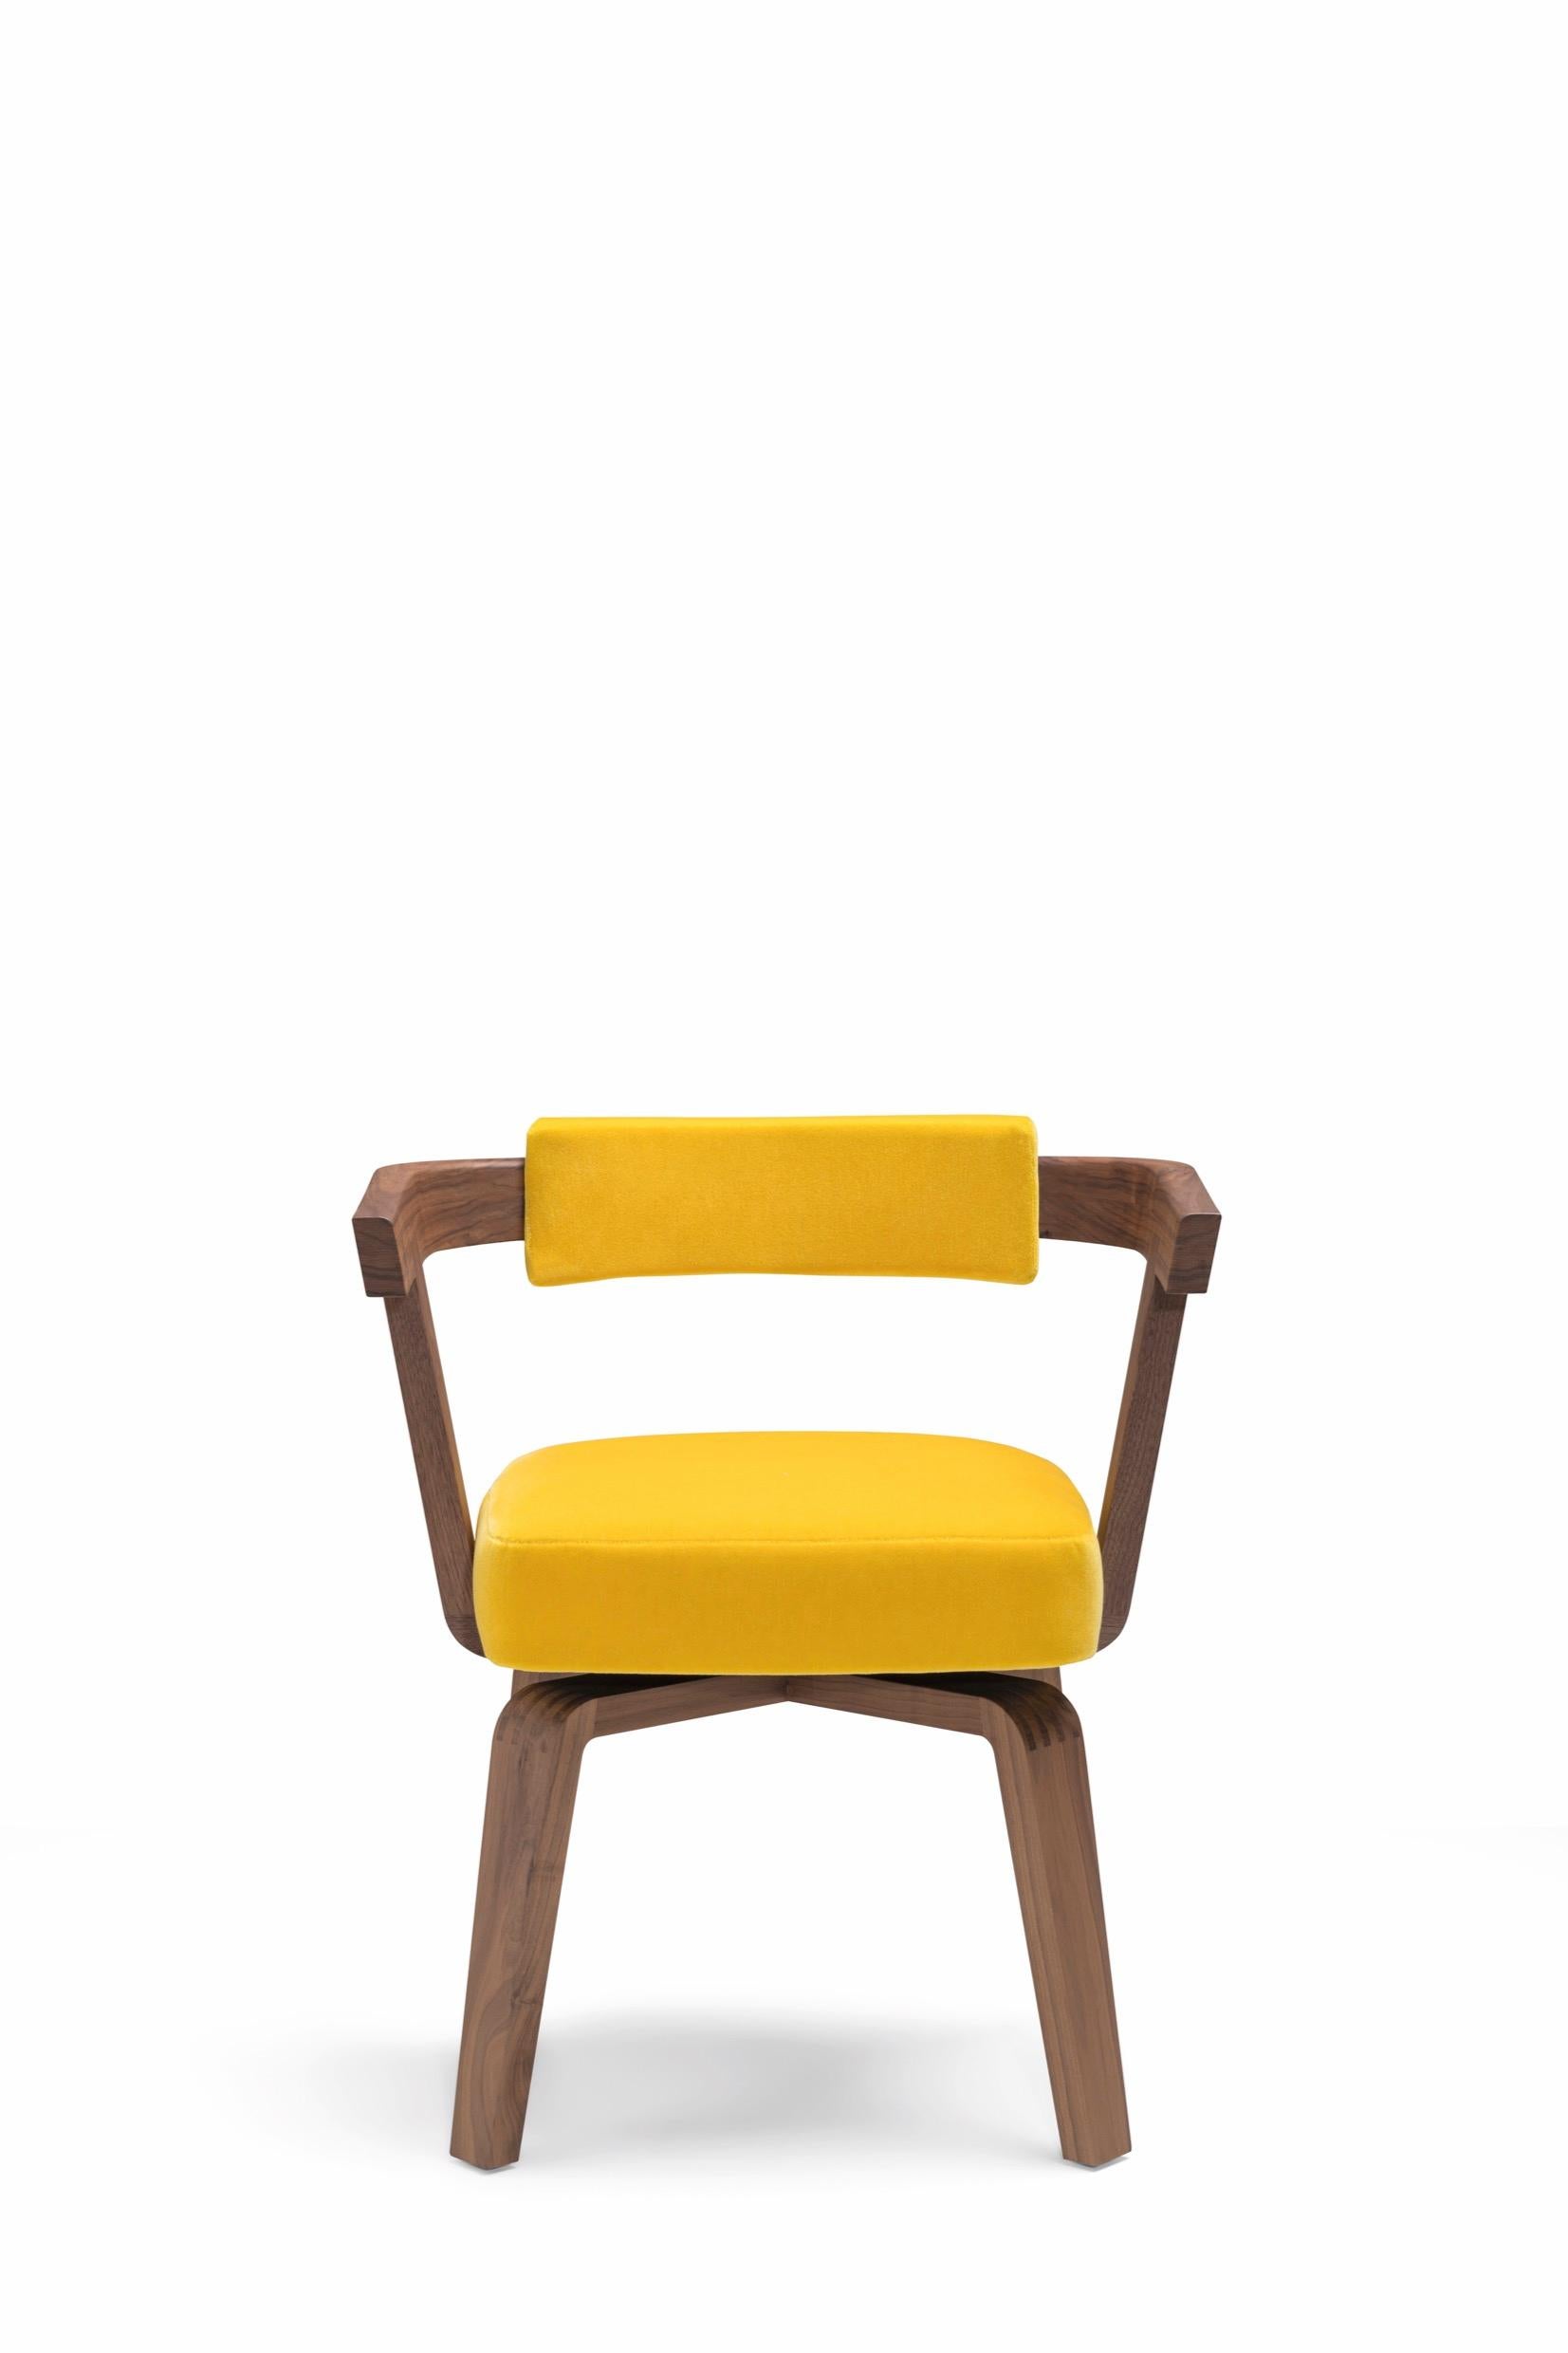 La chaise Porta Volta de Herzog & De Meuron, au design multifonctionnel, est un ajout bienvenu dans n'importe quel espace. Présentée dans la salle de lecture principale de la Bibliothèque nationale d'Israël à Jérusalem, cette chaise doit sa beauté